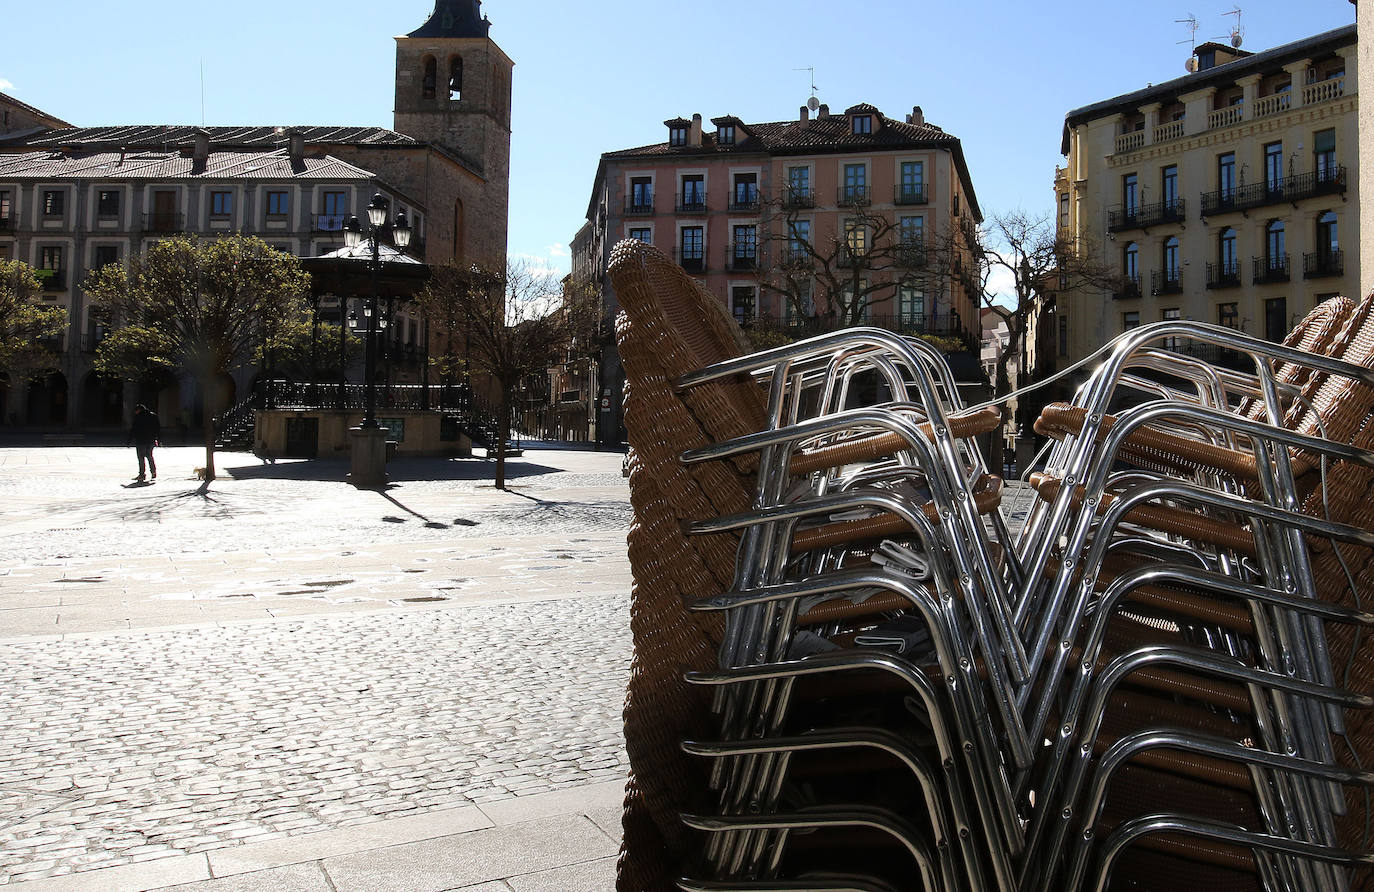 La hostelería de Segovia ya tiembla por la crisis y ansía la reapertura